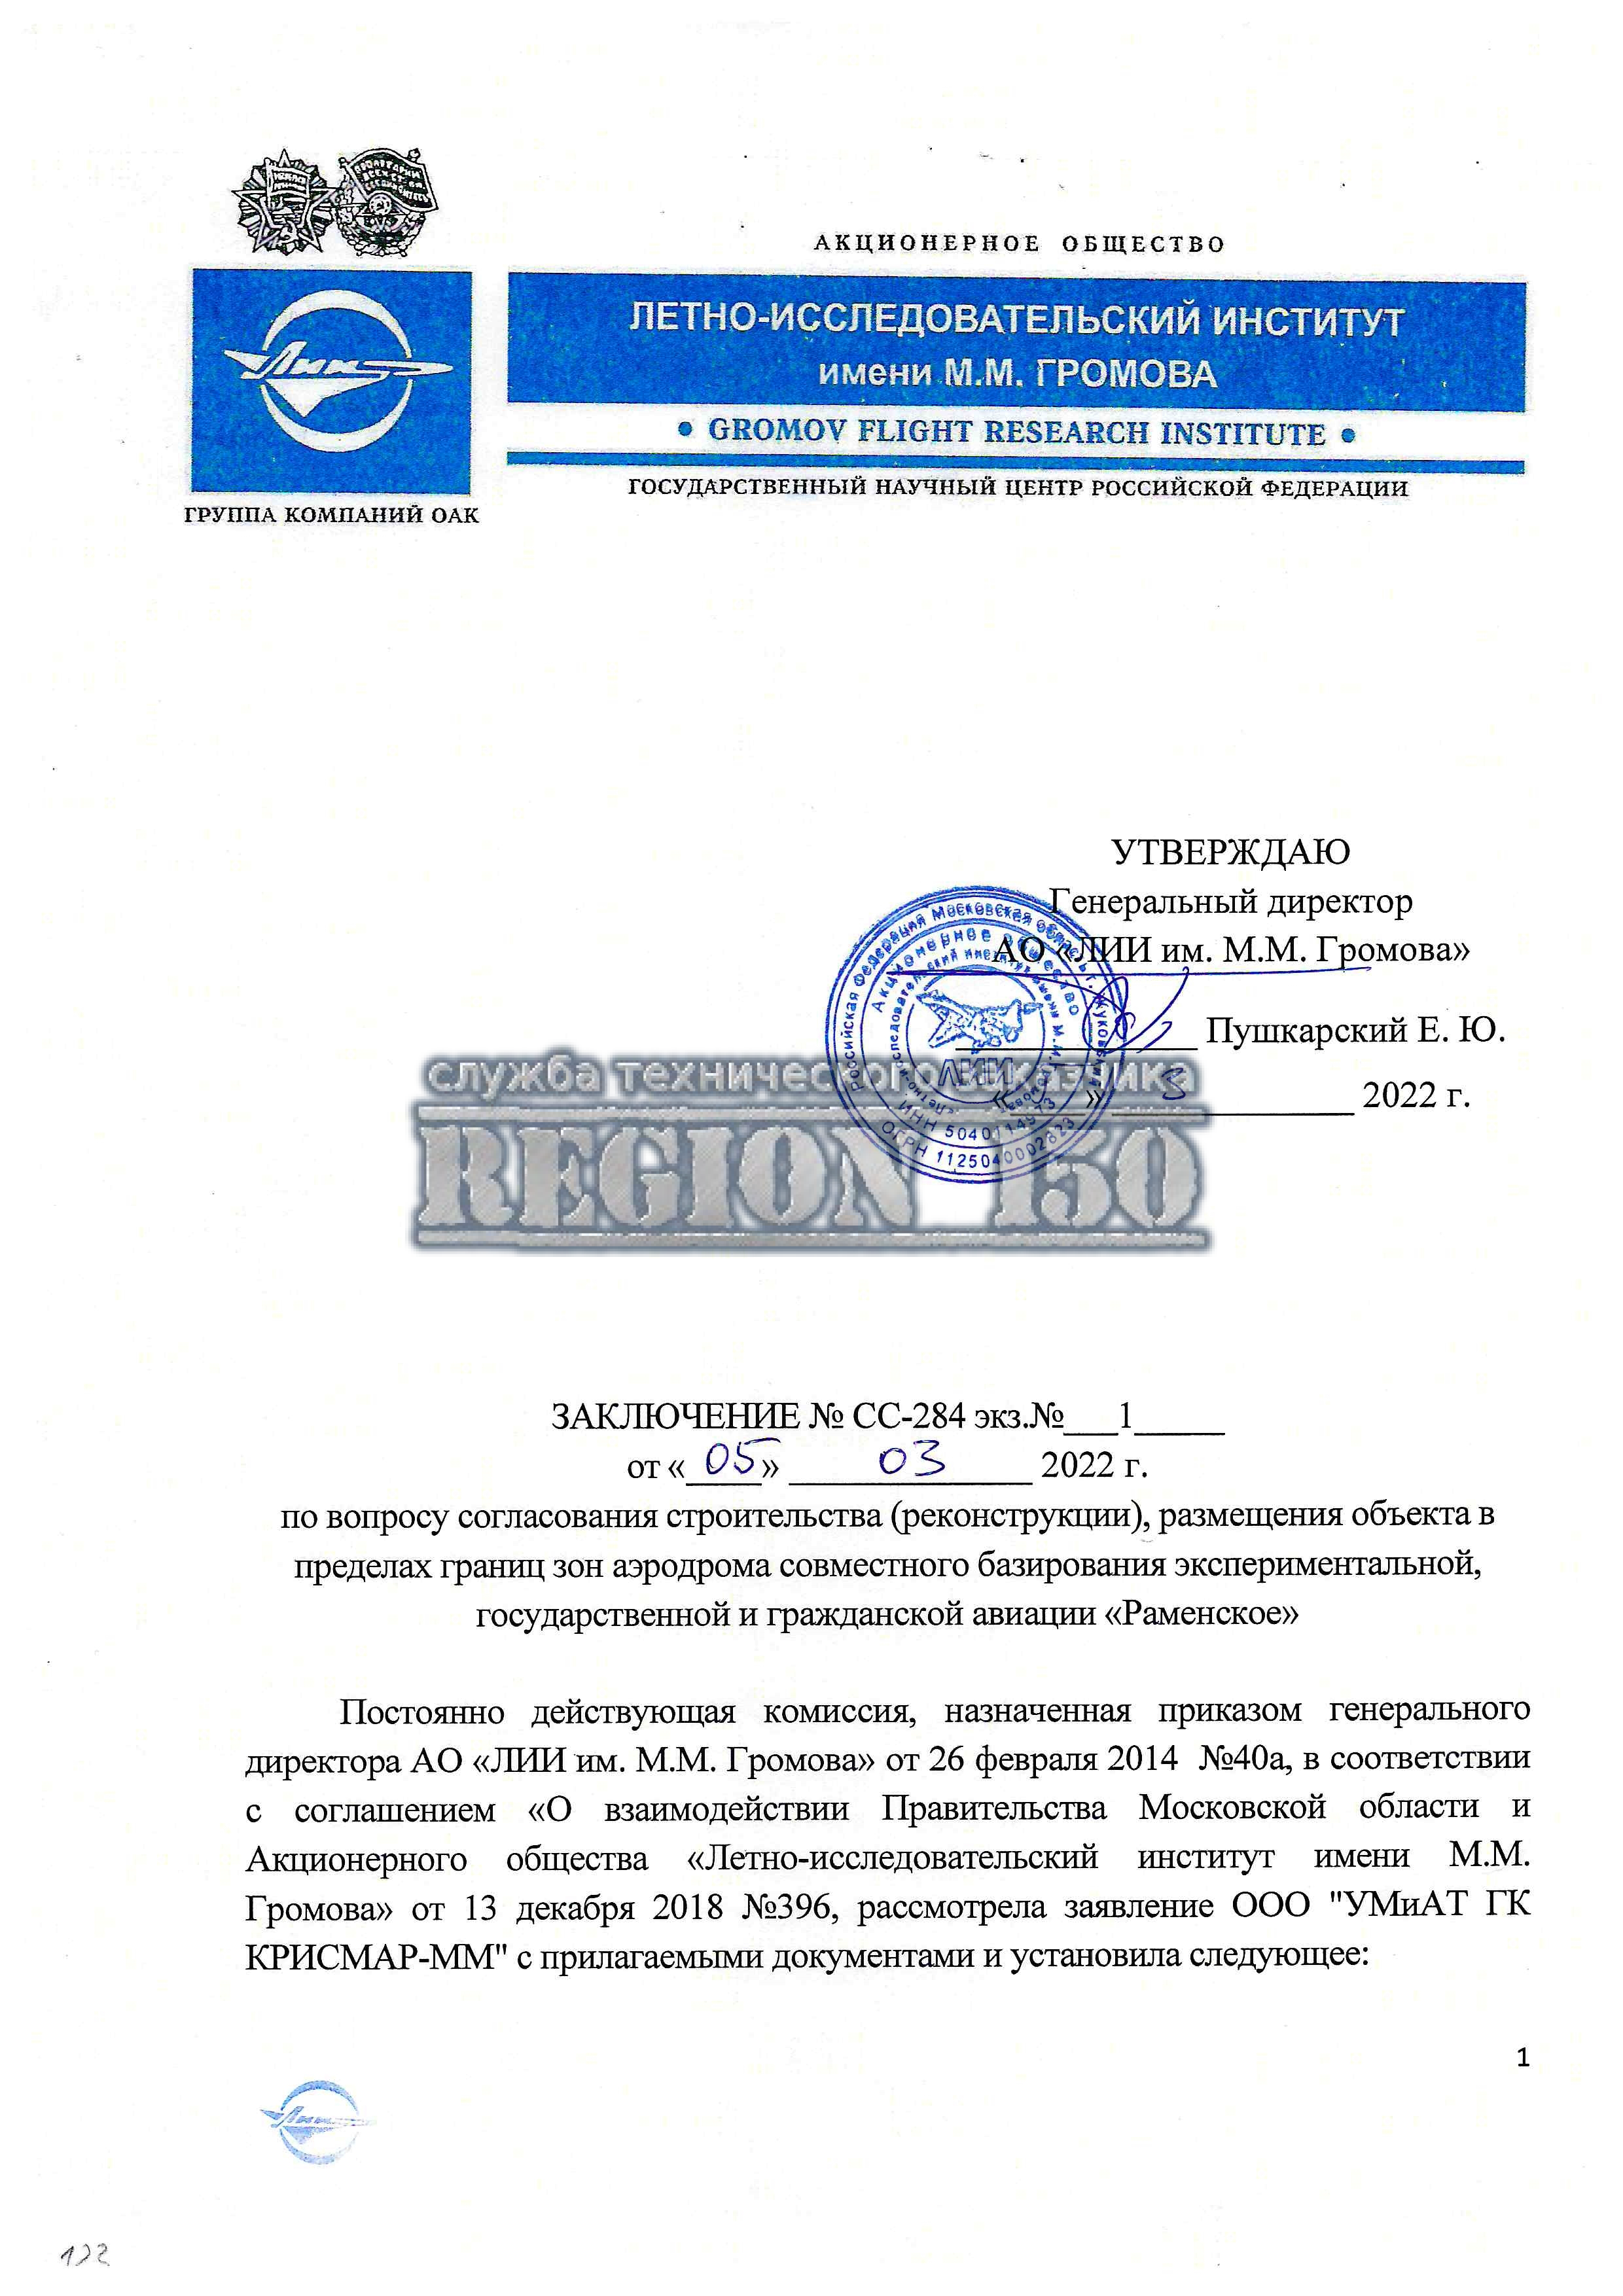 Заключение комиссии ЛИИ имени Громова о согласовании строительства.